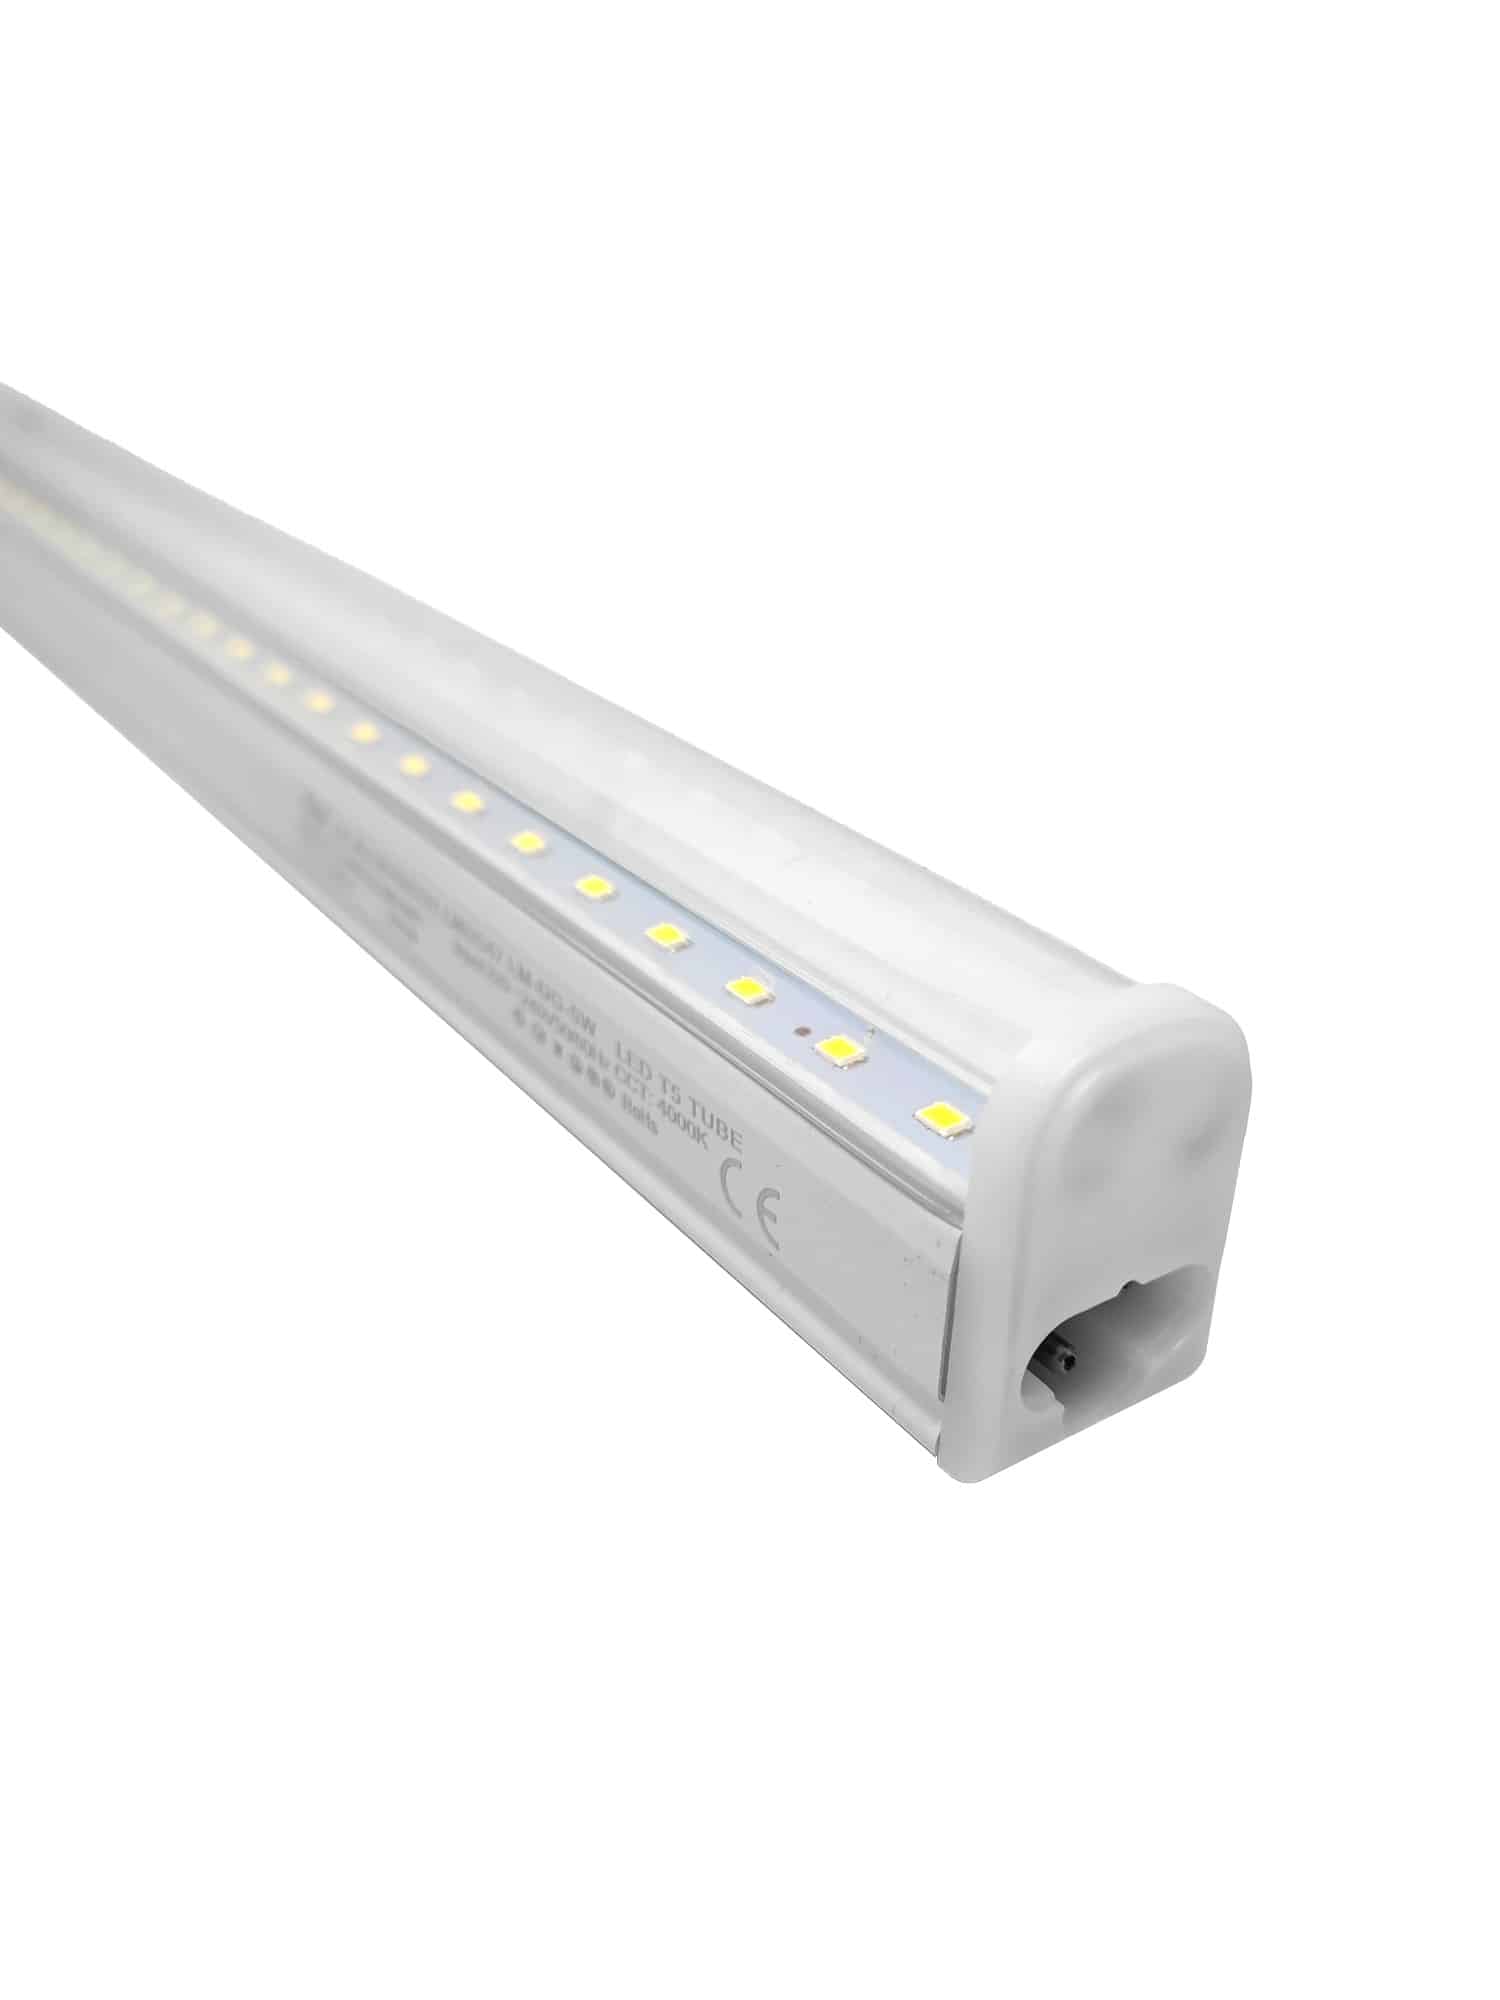 Reglette Tubo LED T5 45cm - Bianco Freddo 6000k / Trasparente